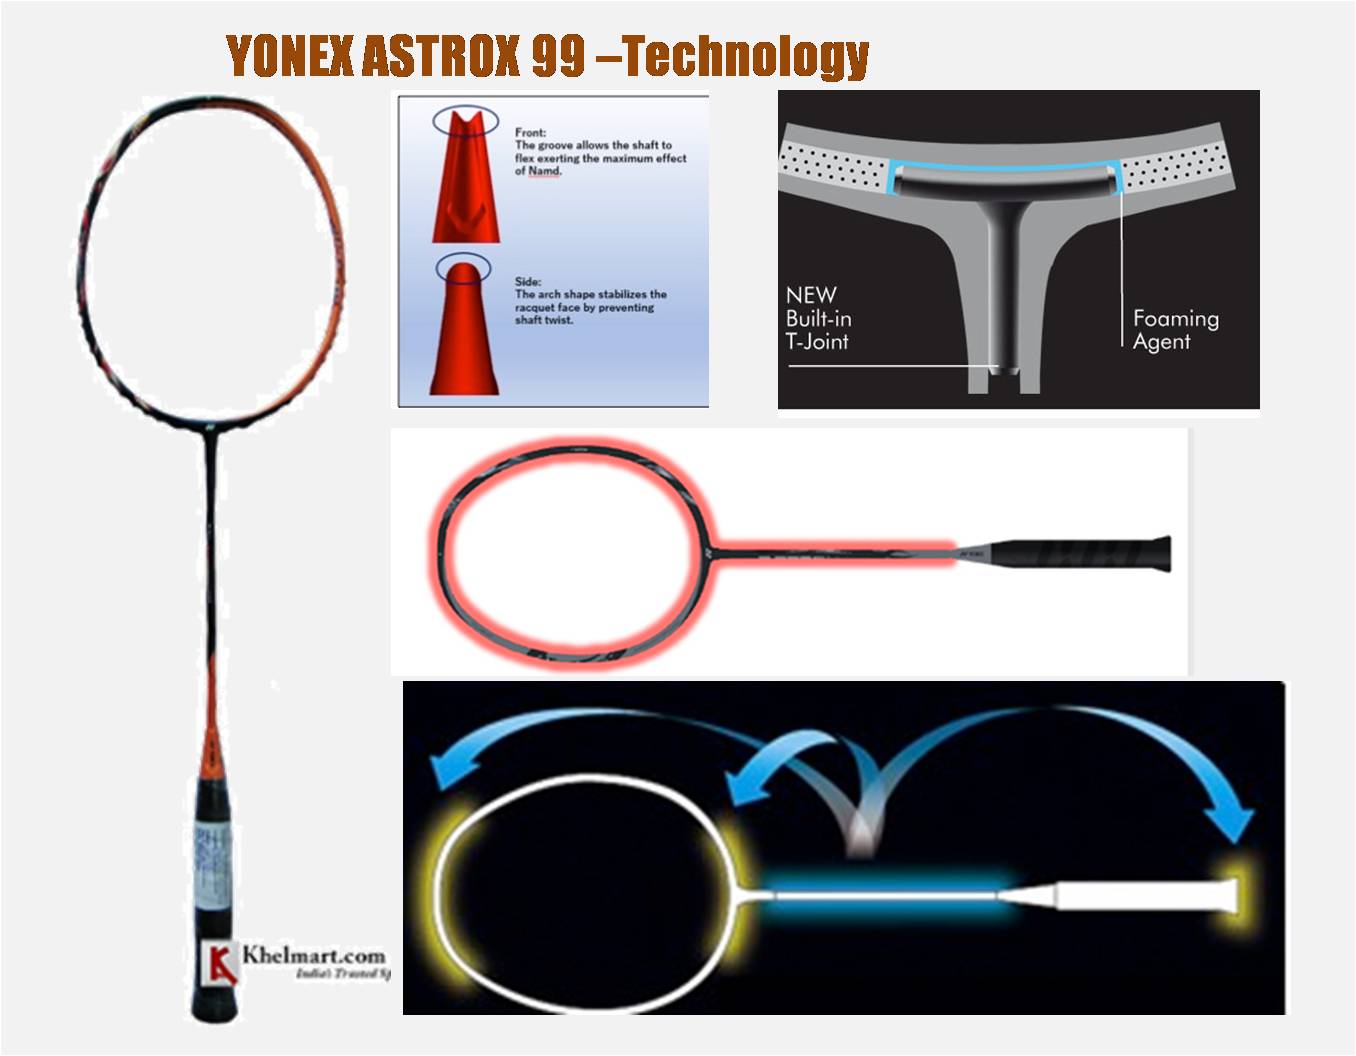 Yonex_Astrox99_Racket_Technology_khelmart2